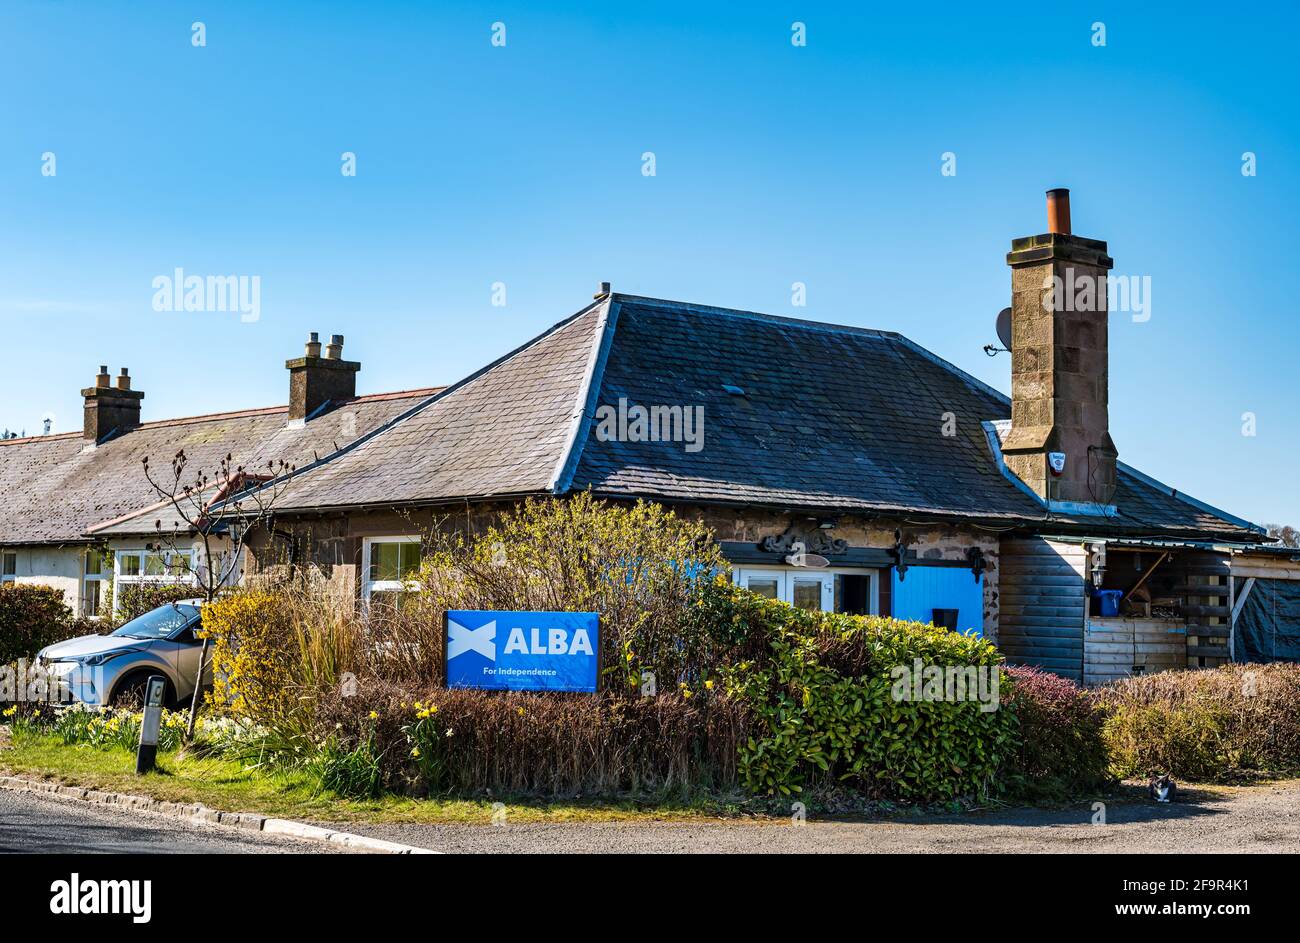 Maison avec affiche du parti politique d'Alba à l'extérieur en faveur de l'indépendance écossaise, East Lothian, Écosse, Royaume-Uni Banque D'Images